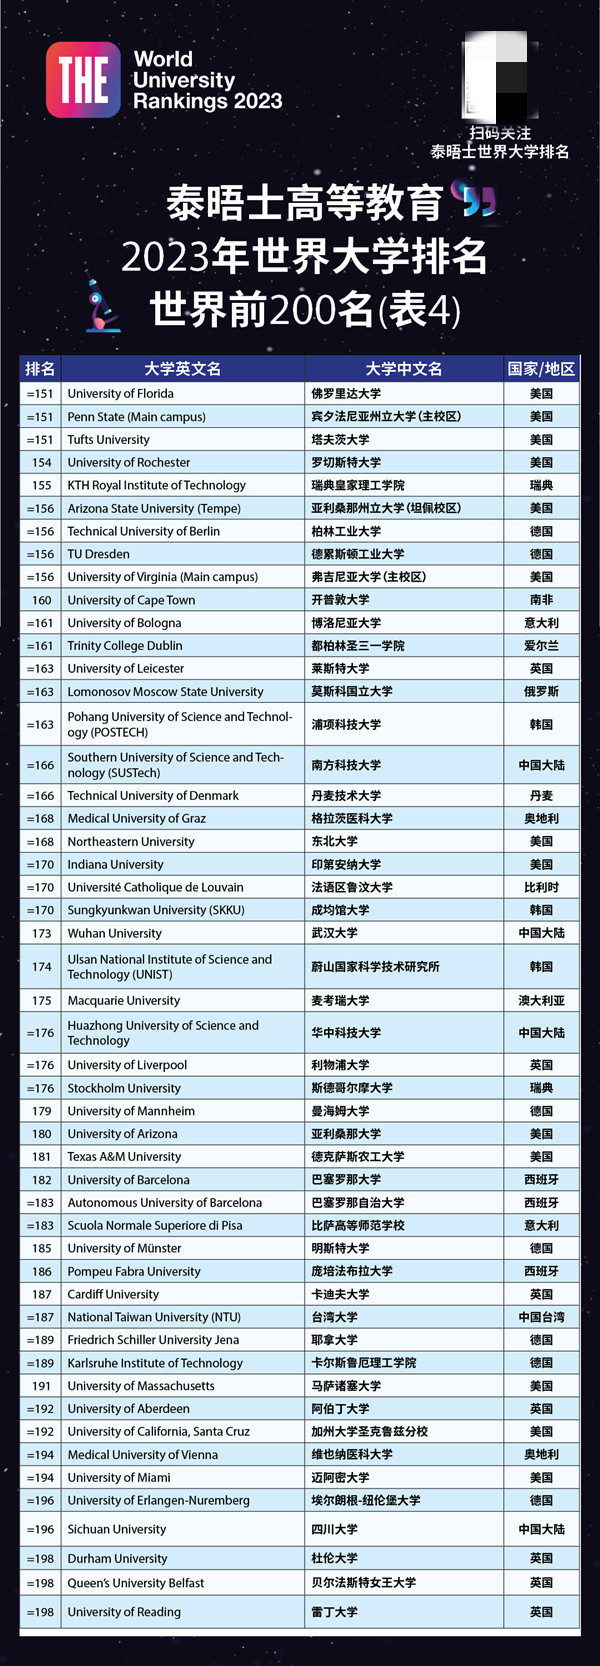 2023年世界大学排名发布 清华亚洲第一 牛津世界第一